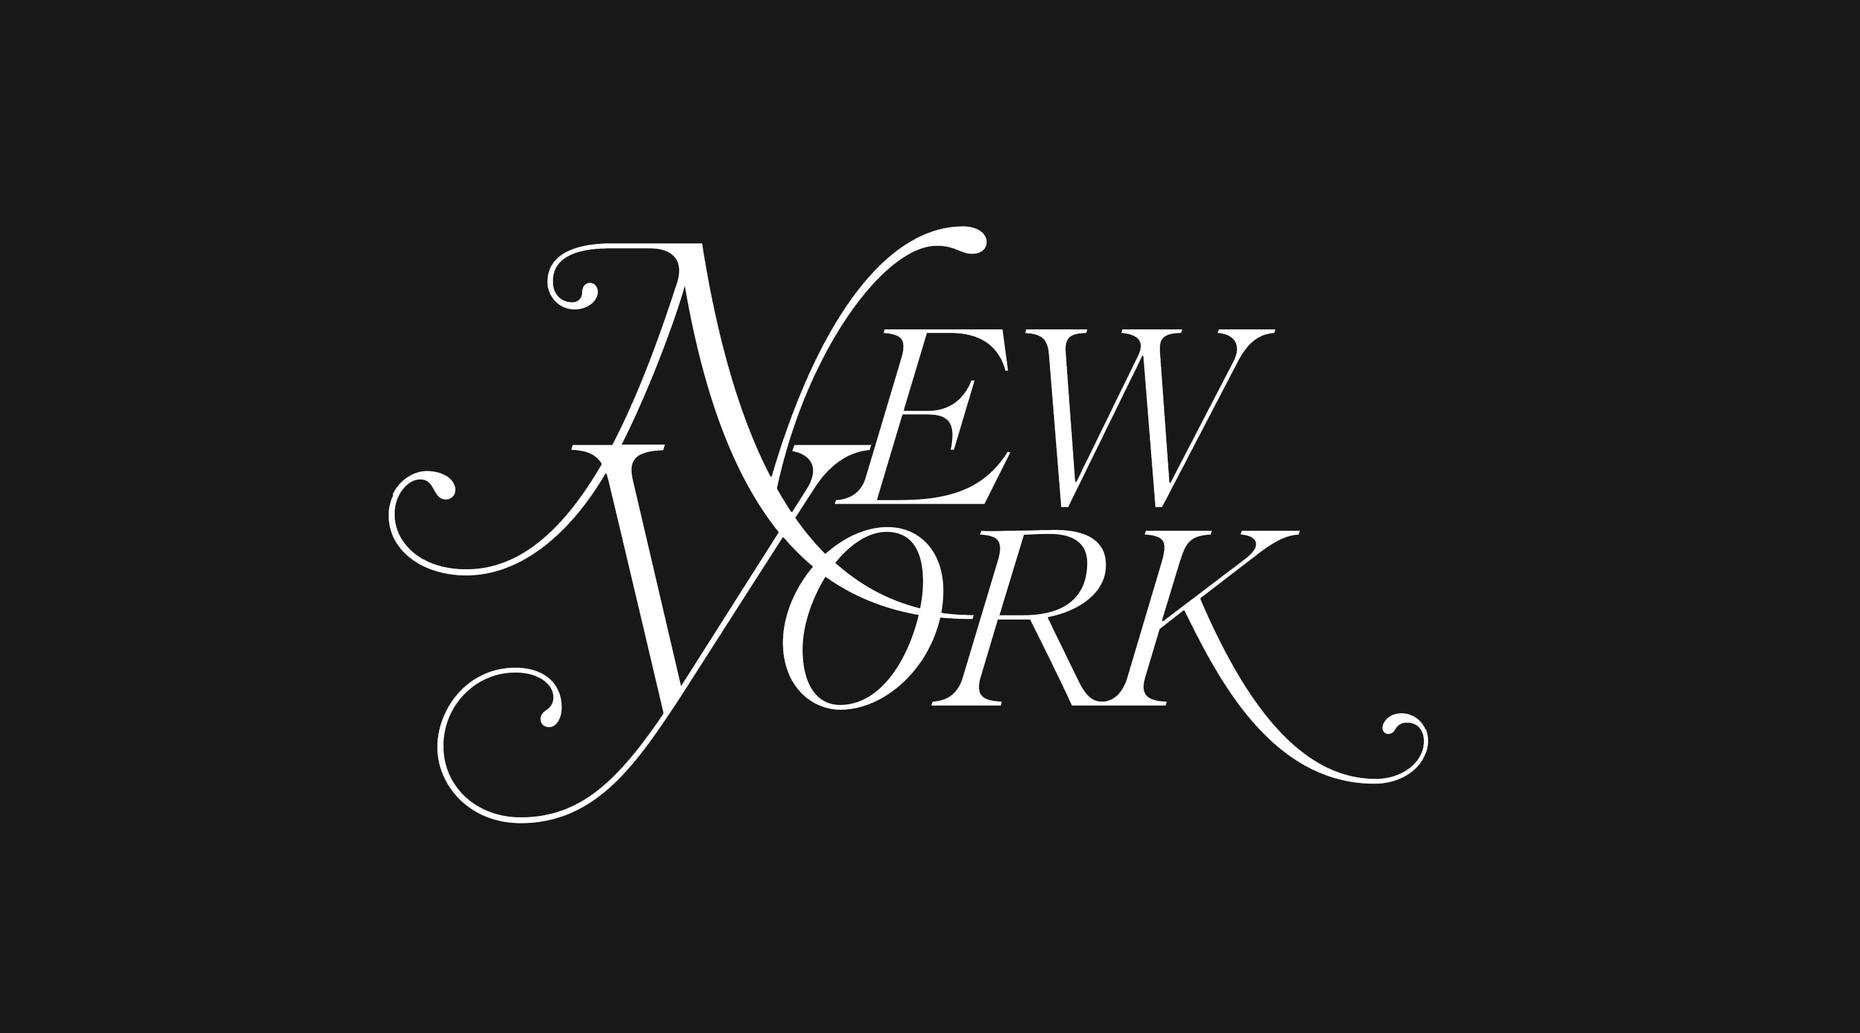 New york magazine logo 9pbe8l8